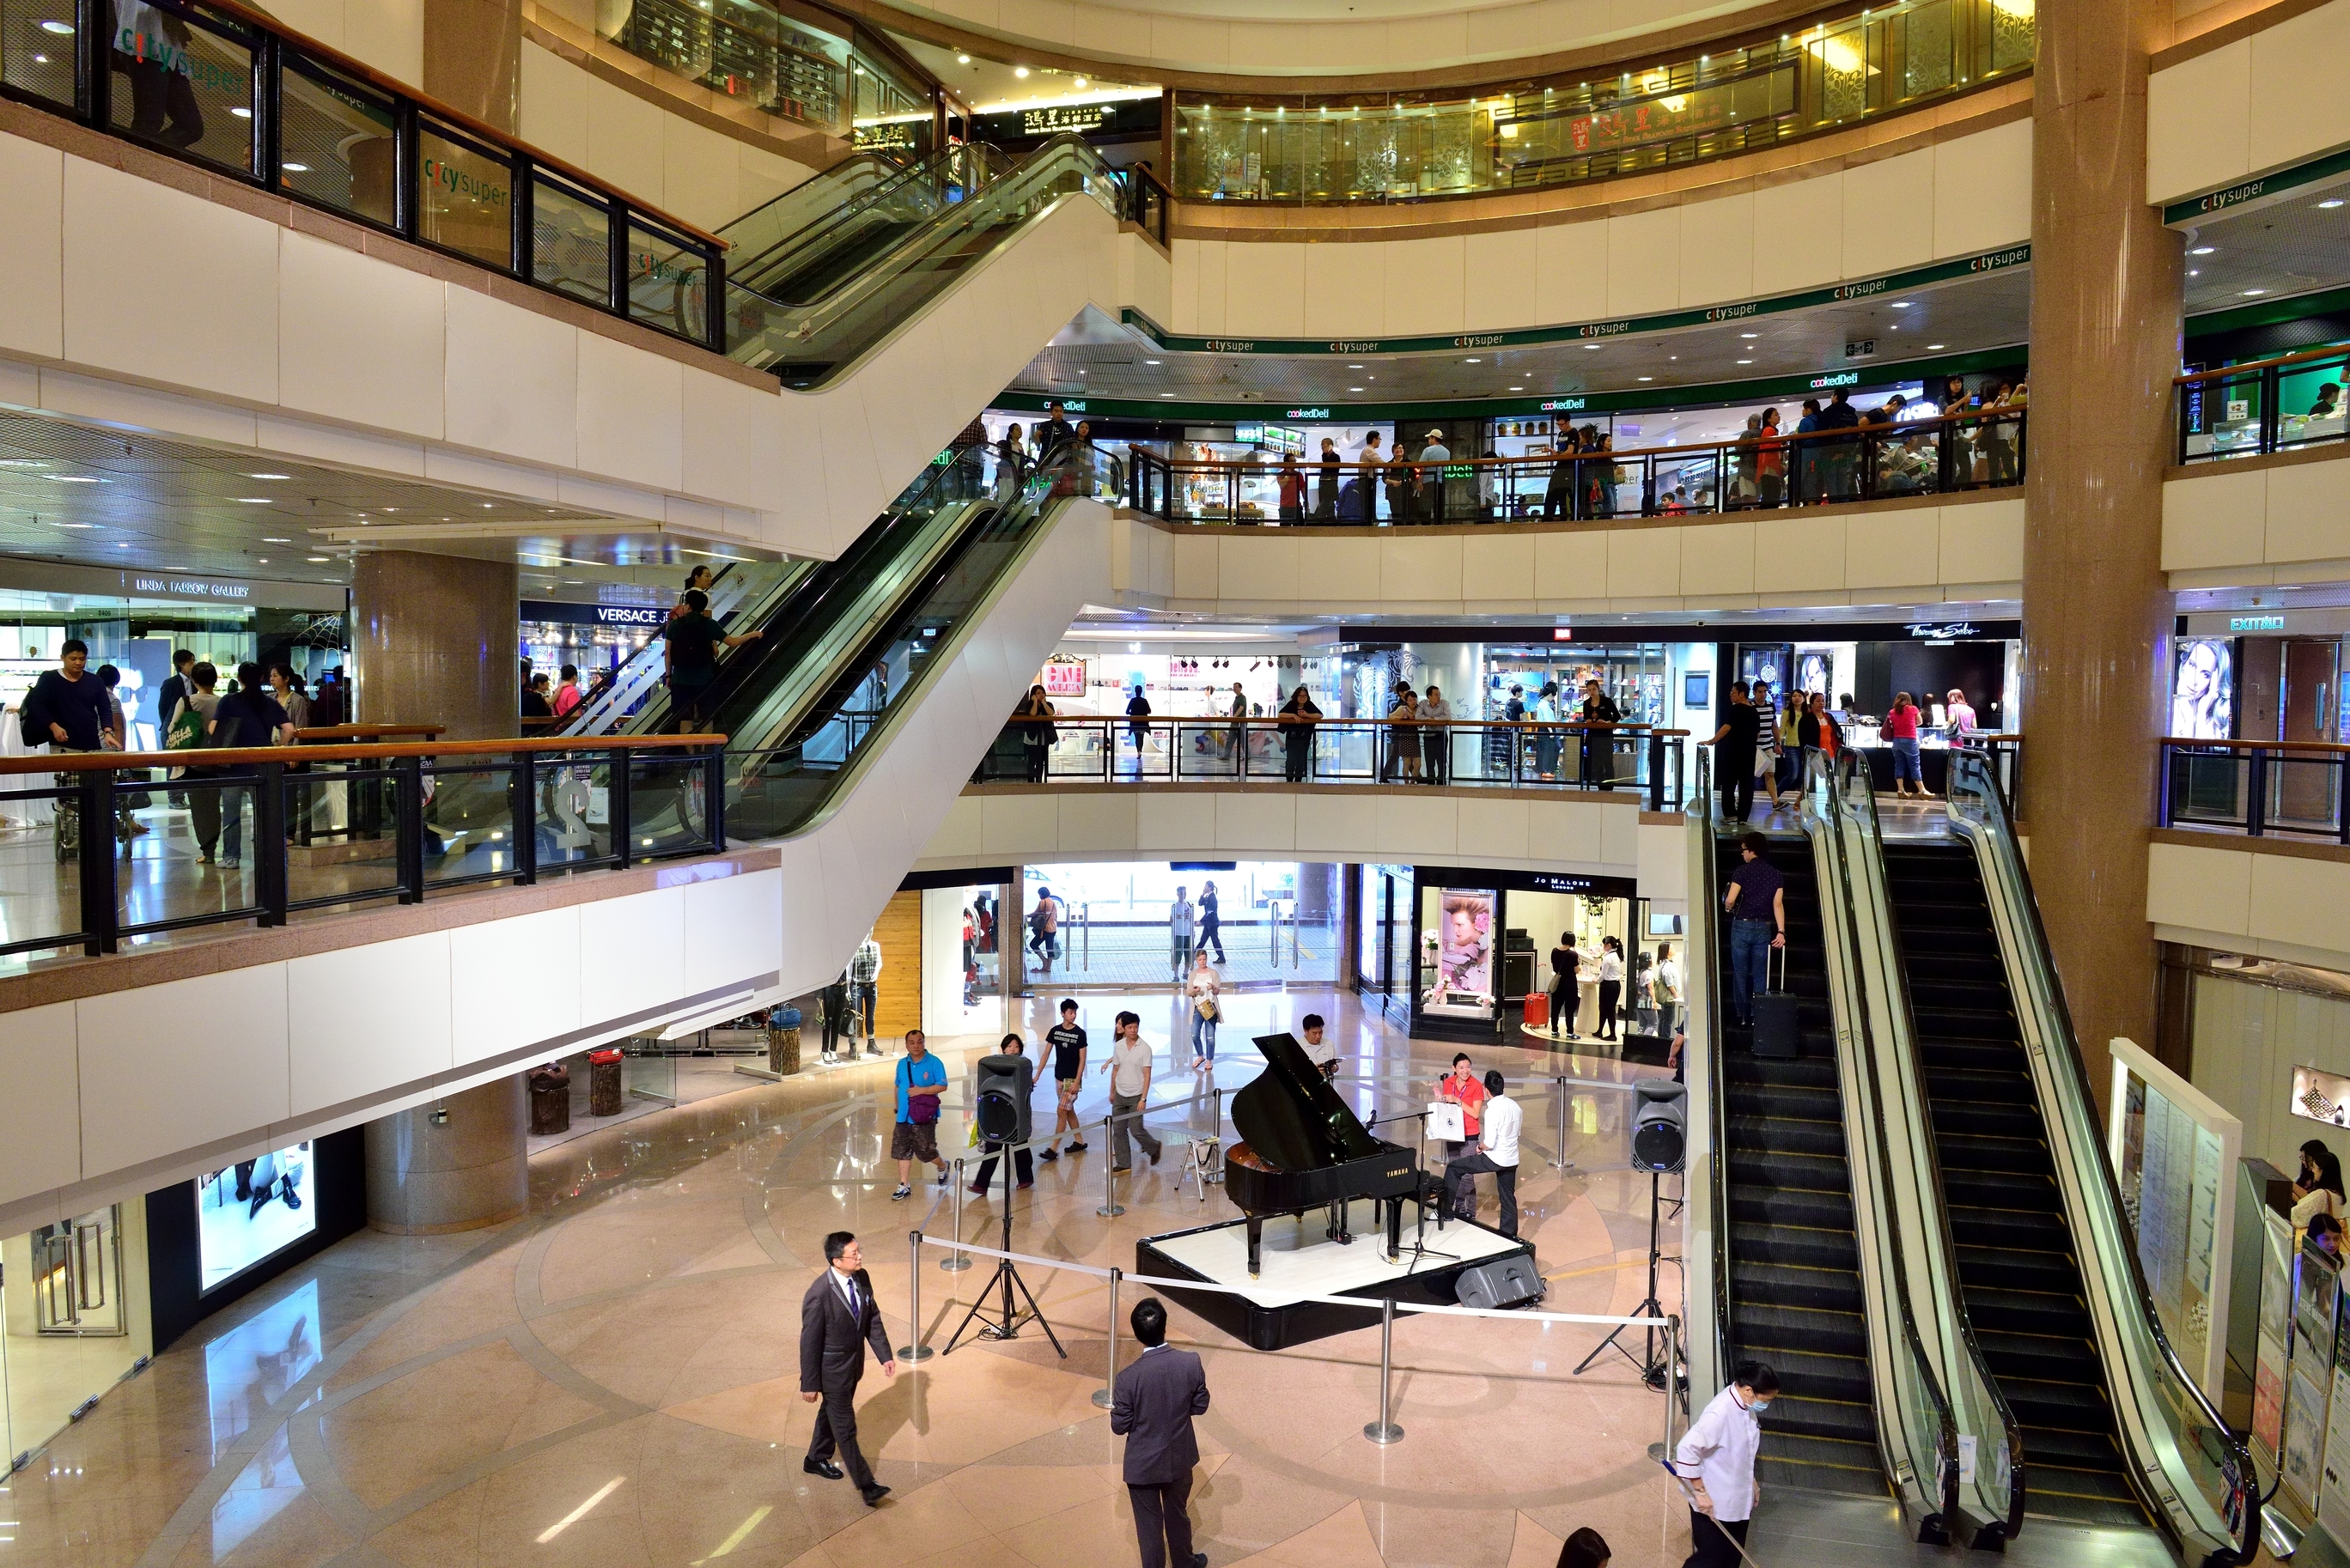 Harbour city mall, Canton road, Tsin Sha Tsui, Kowloon, Hong Kong